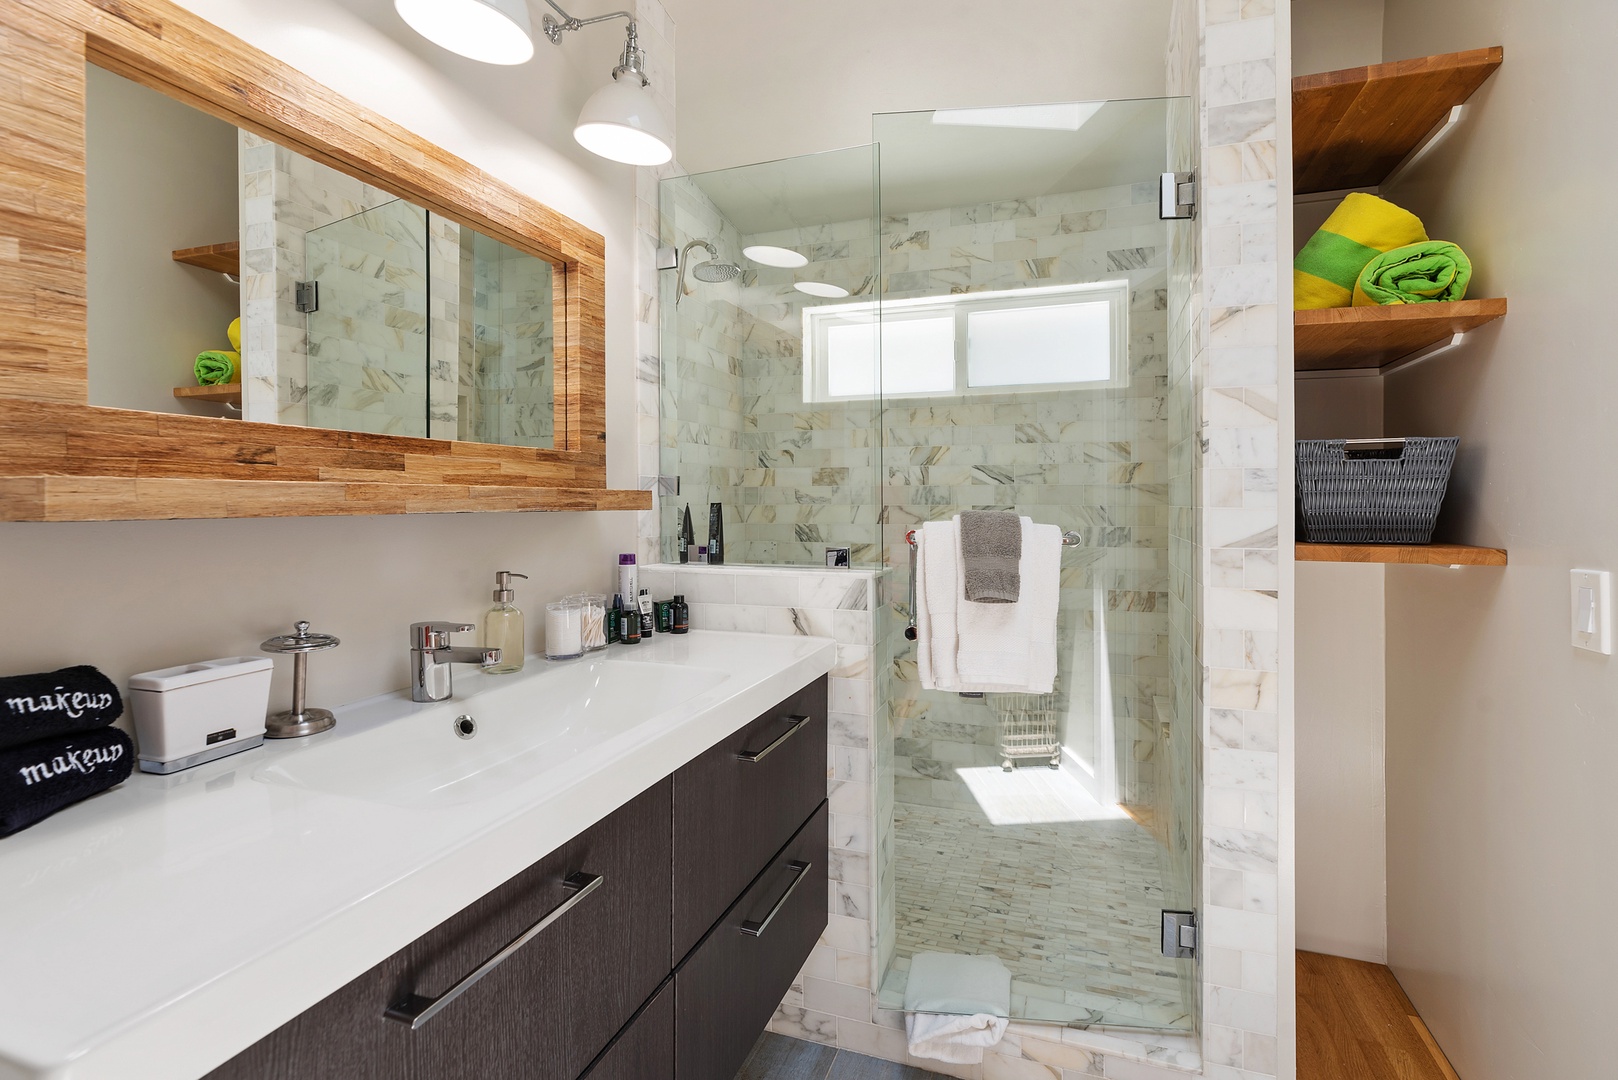 Del Mar Vacation Rentals, Del Mar Zuni Delight - Primary bathroom shower and dual vanity